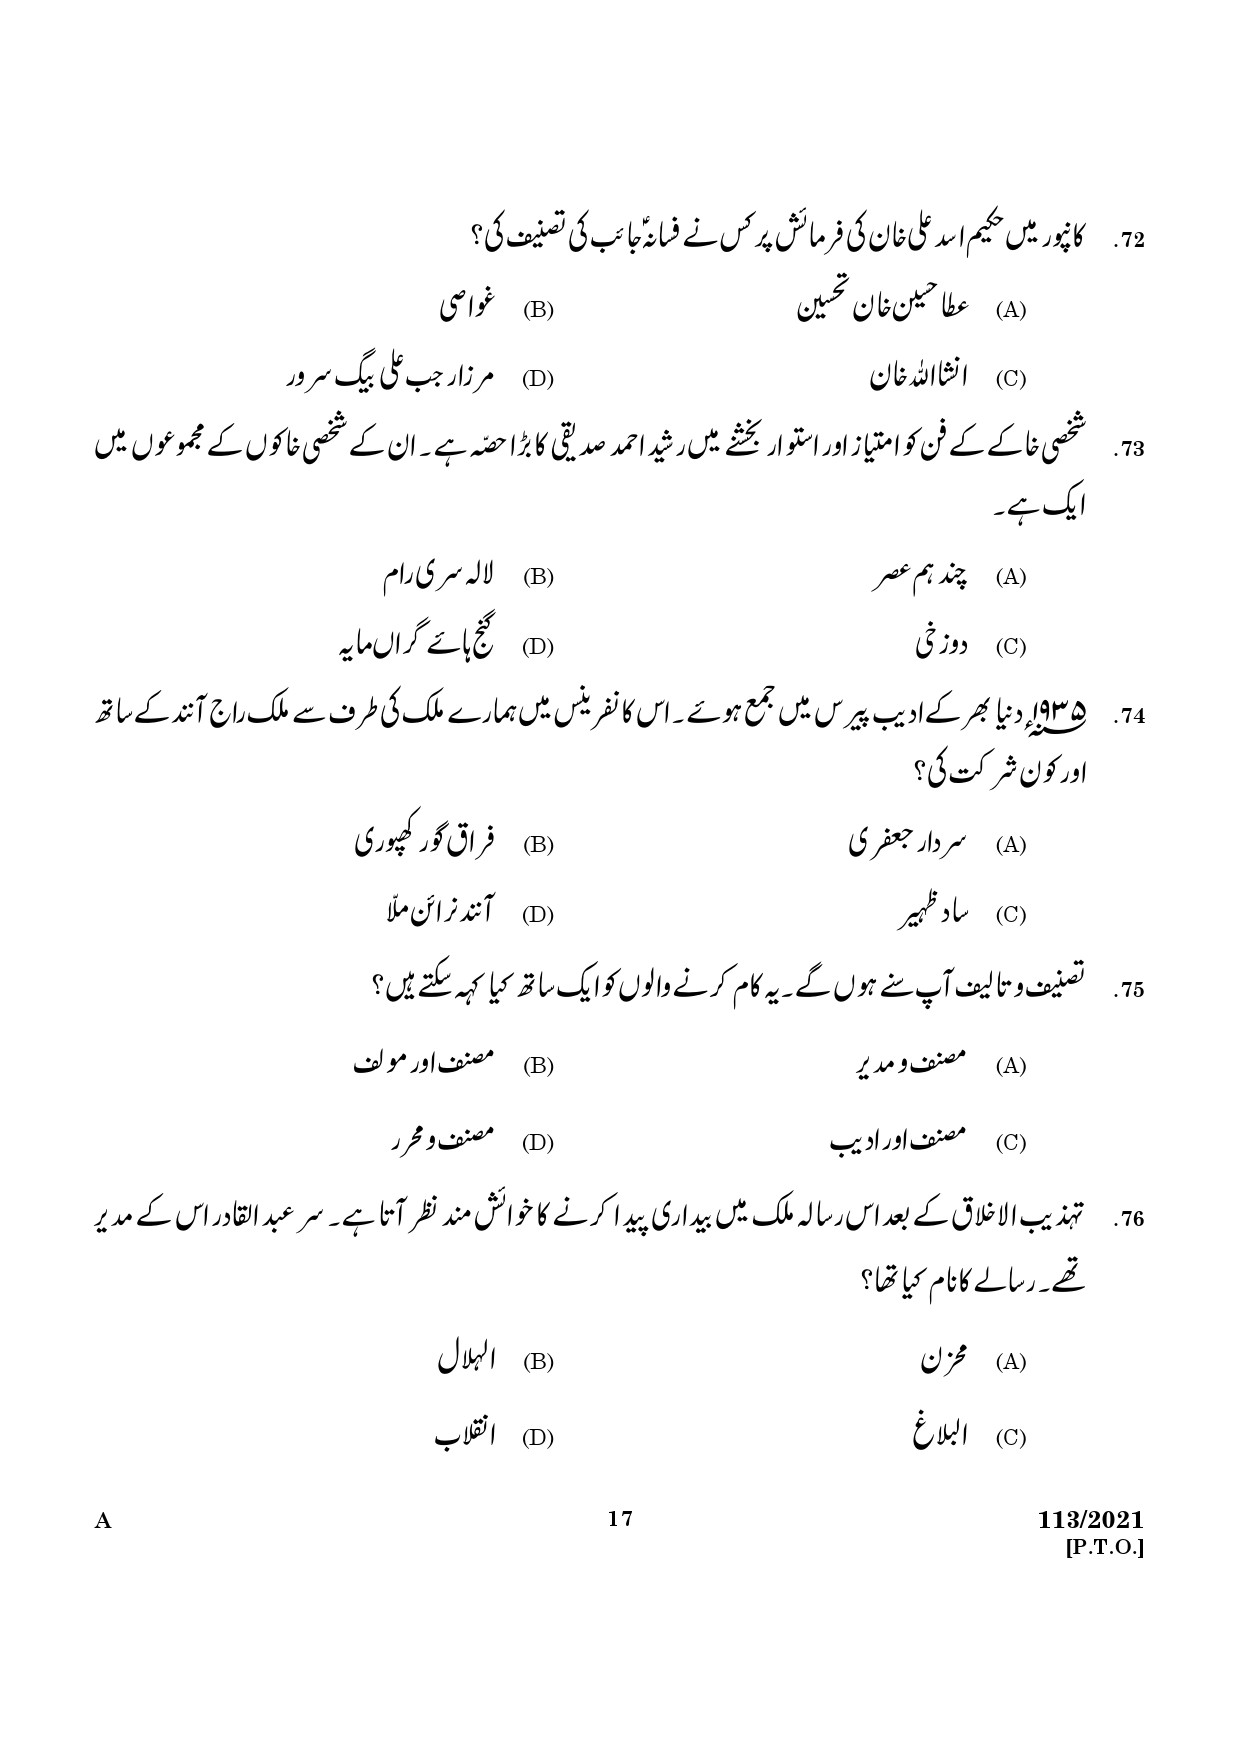 KPSC Part Time High School Assistant Urdu Exam 2021 Code 1132021 15